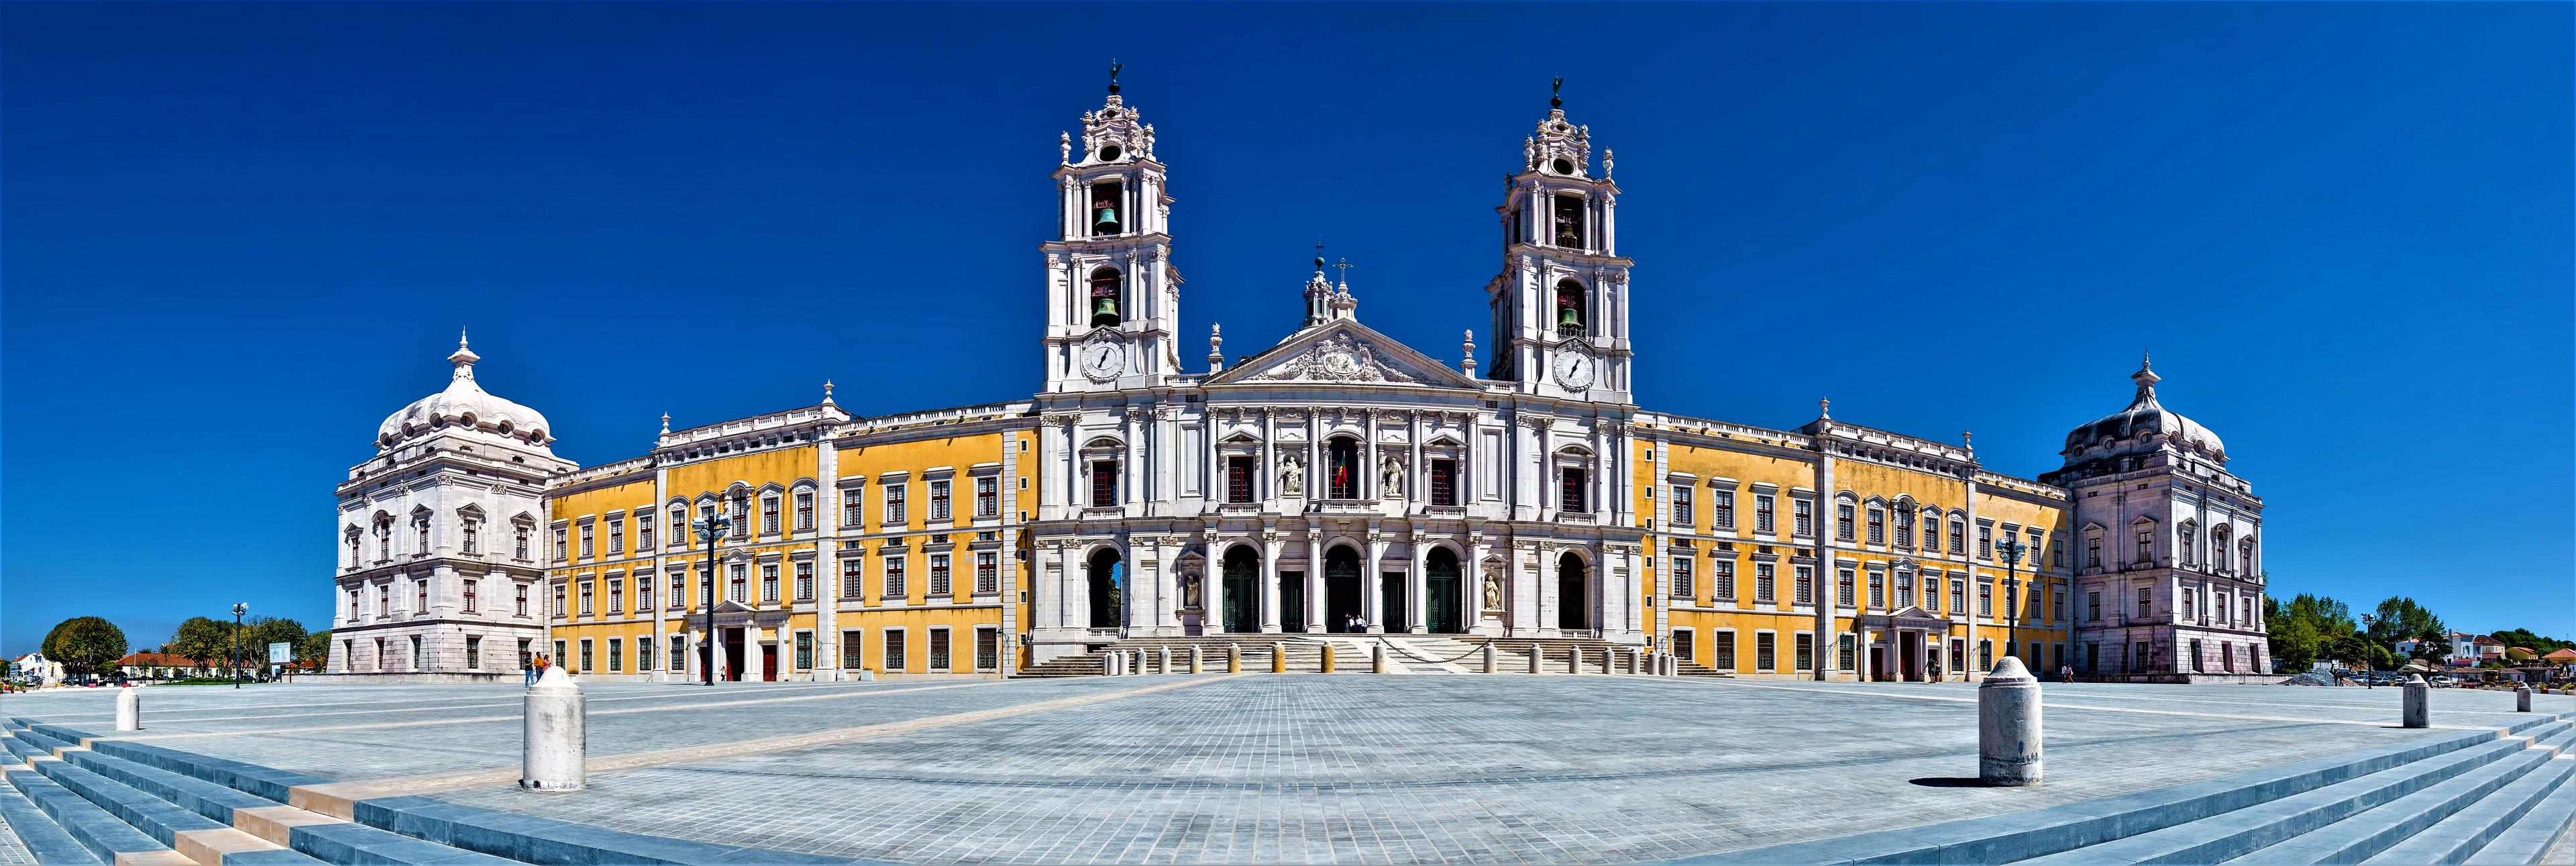 Cover image of this place Palácio Nacional de Mafra